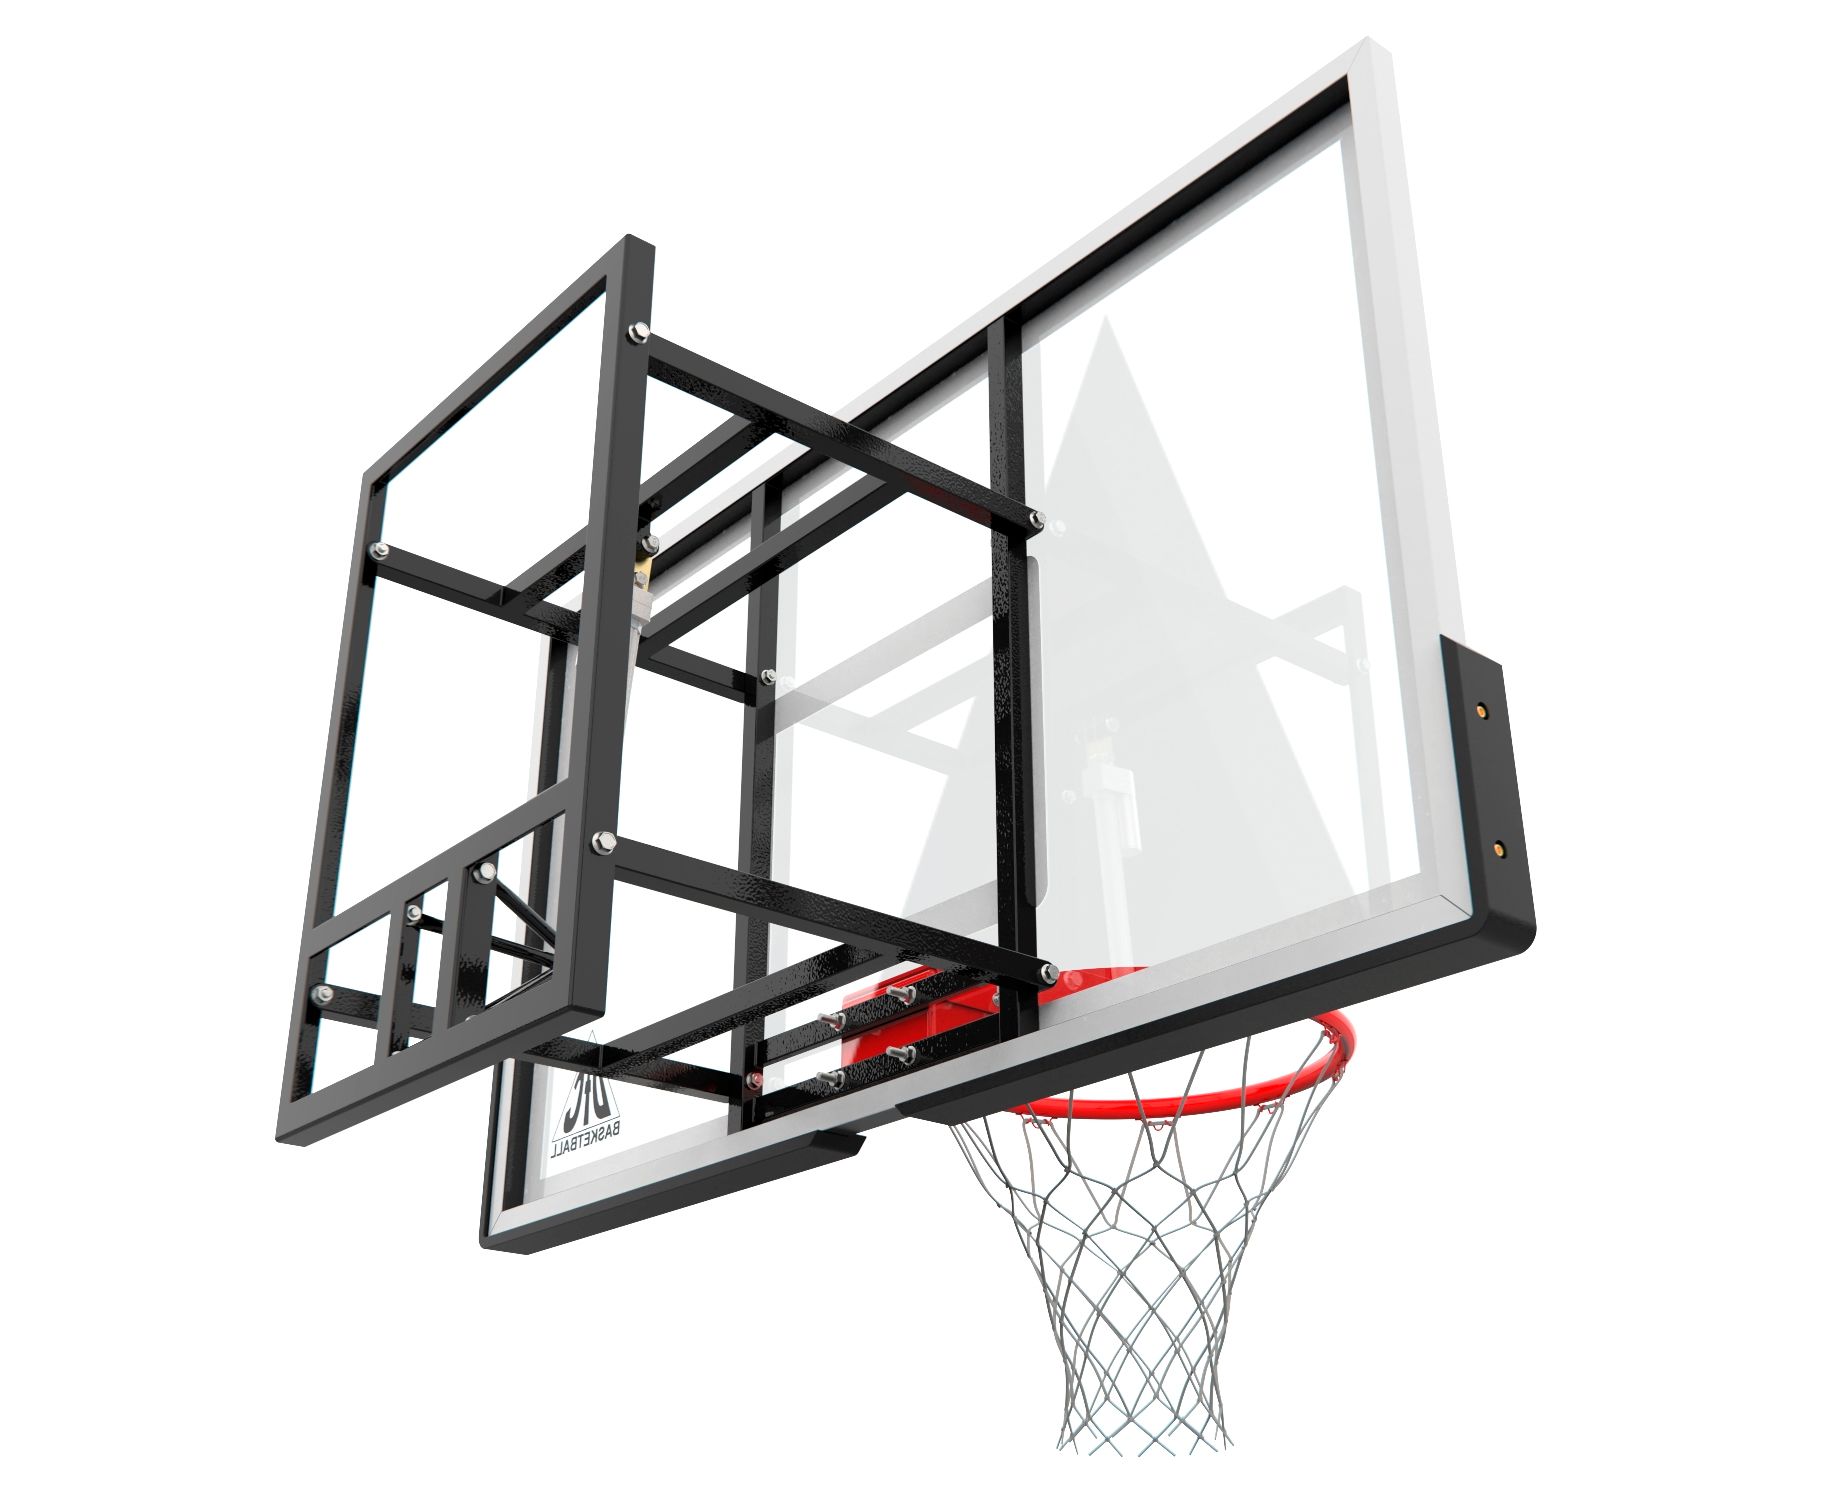 Баскетбольный щит DFC BOARD54PD 1834_1500